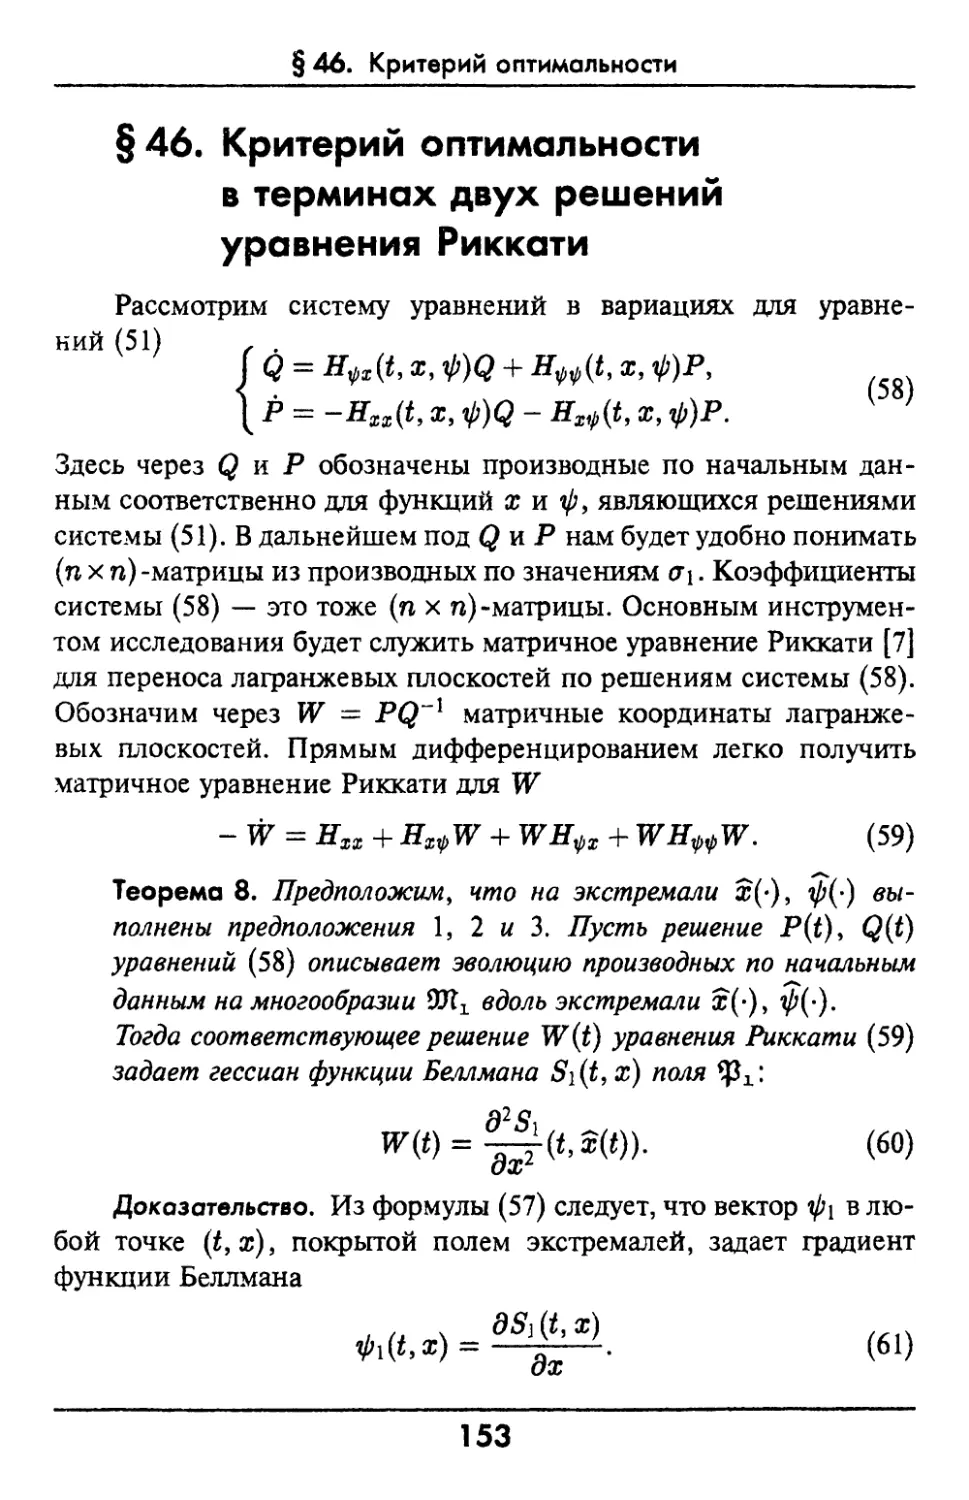 §46. Критерий оптимальности в терминах двух решений уравнения Риккати